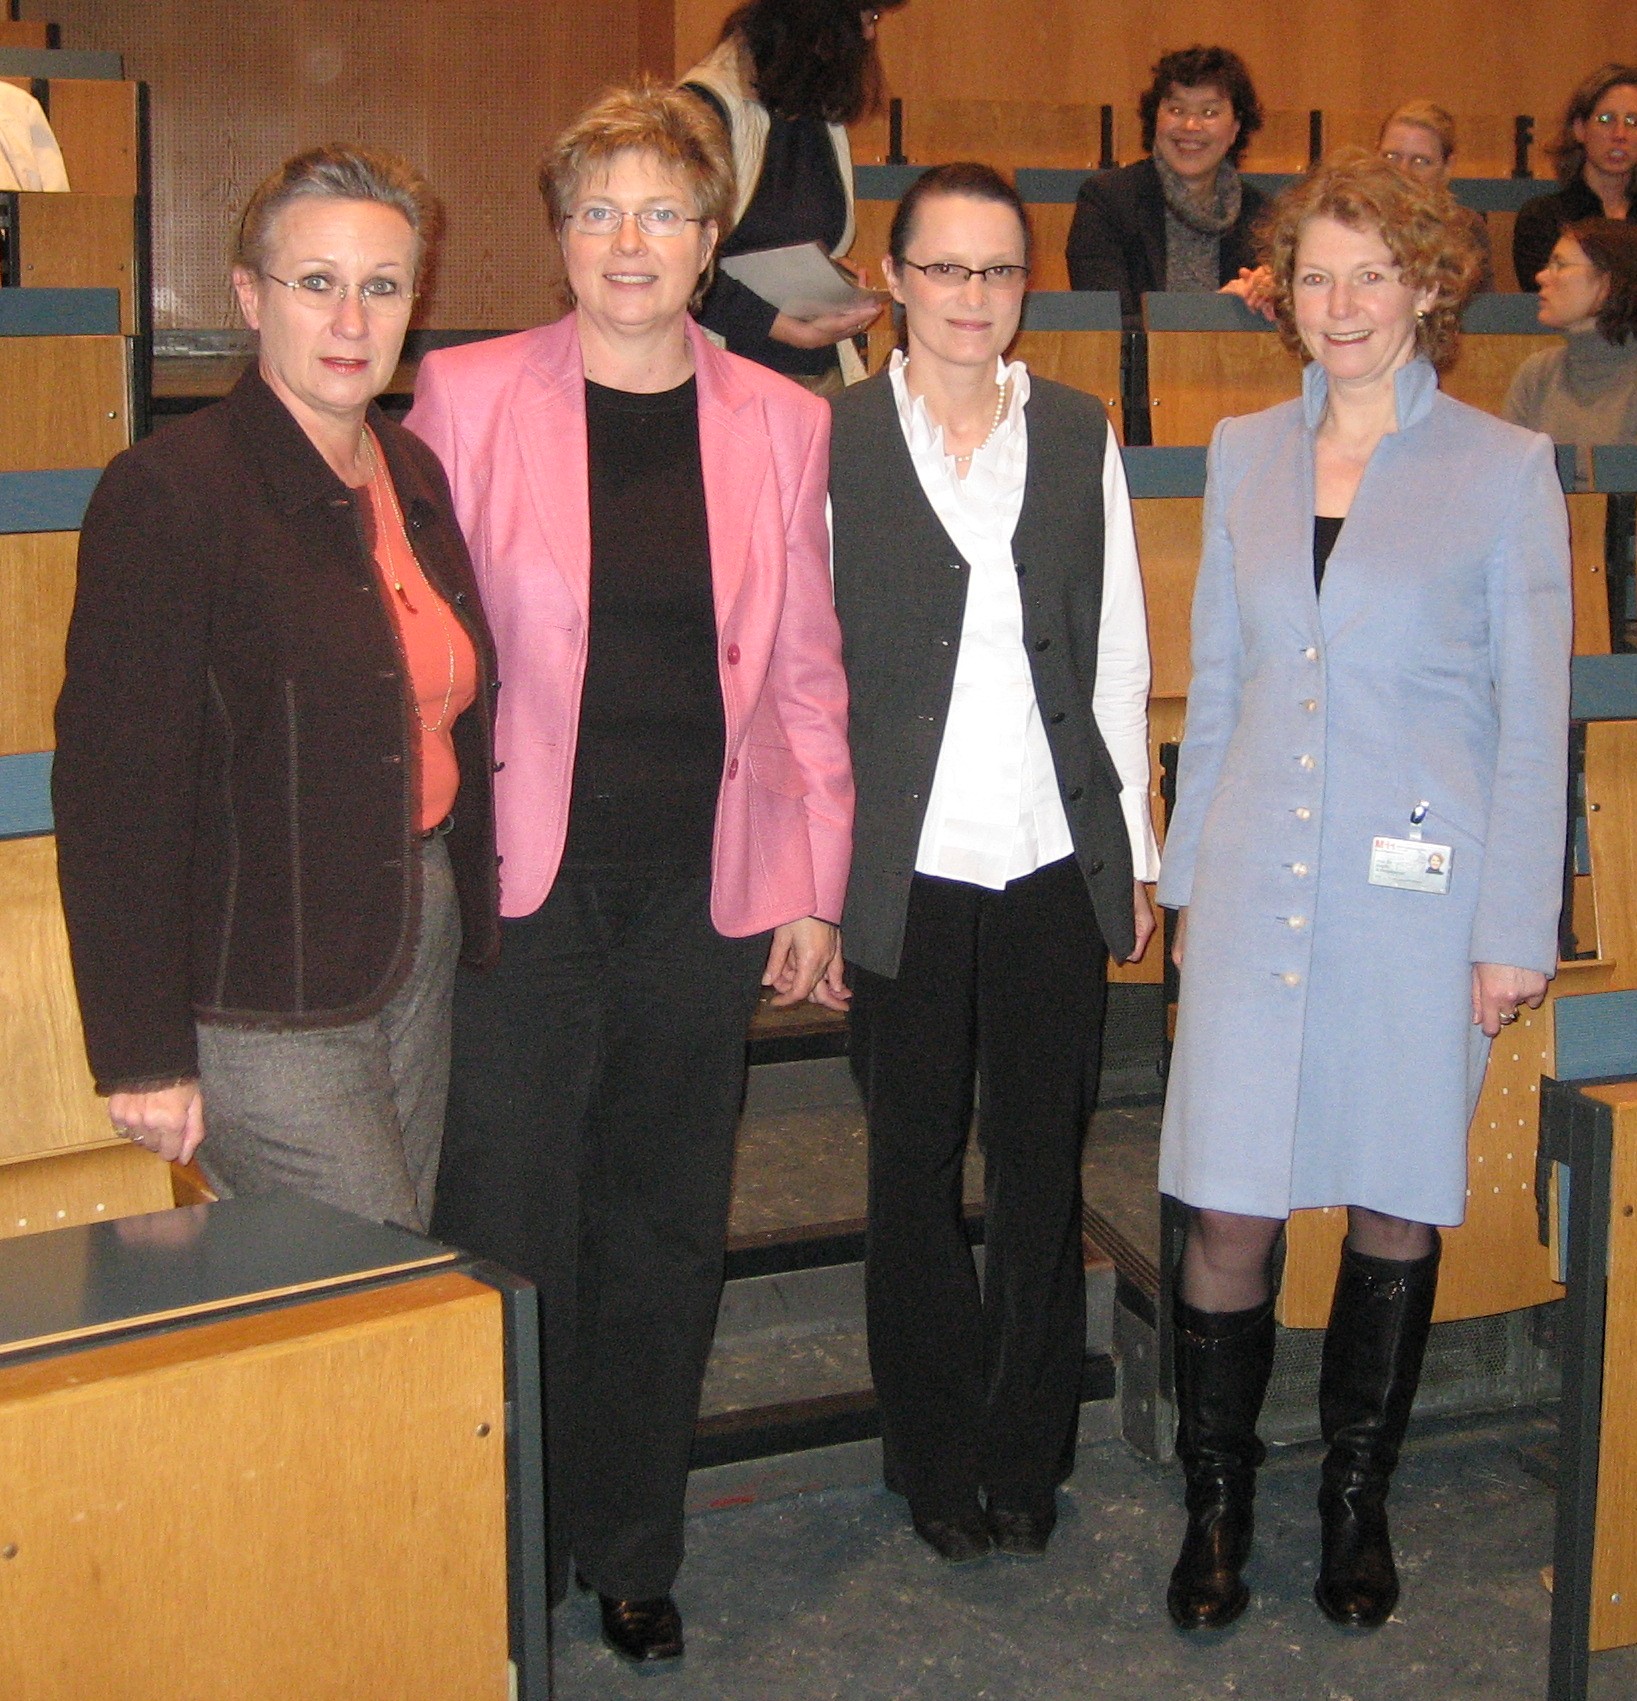 Das Bild zeigt vier Personen, darunter Professorin Gerardy-Schahn und Dr. Bärbel Miemietz. Sie stehen in einem Hörsaal und lächeln in die Kamera.